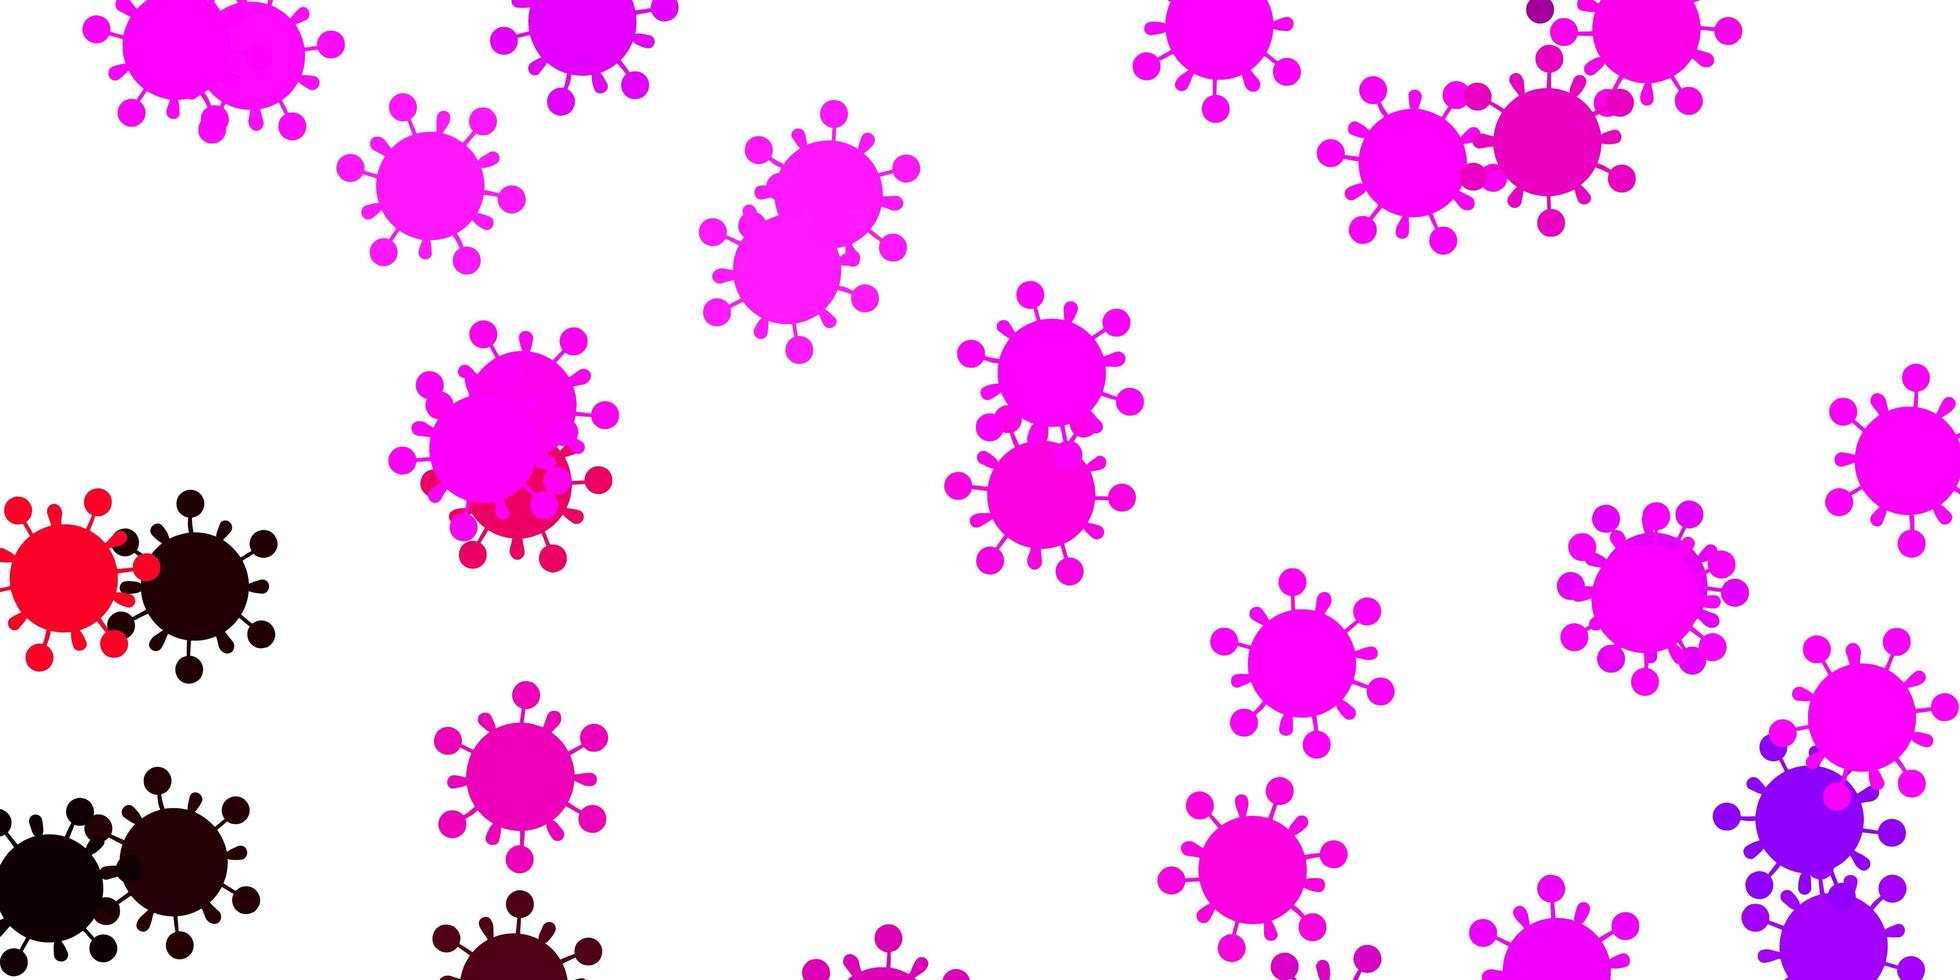 sfondo vettoriale rosa viola chiaro con simboli di virus